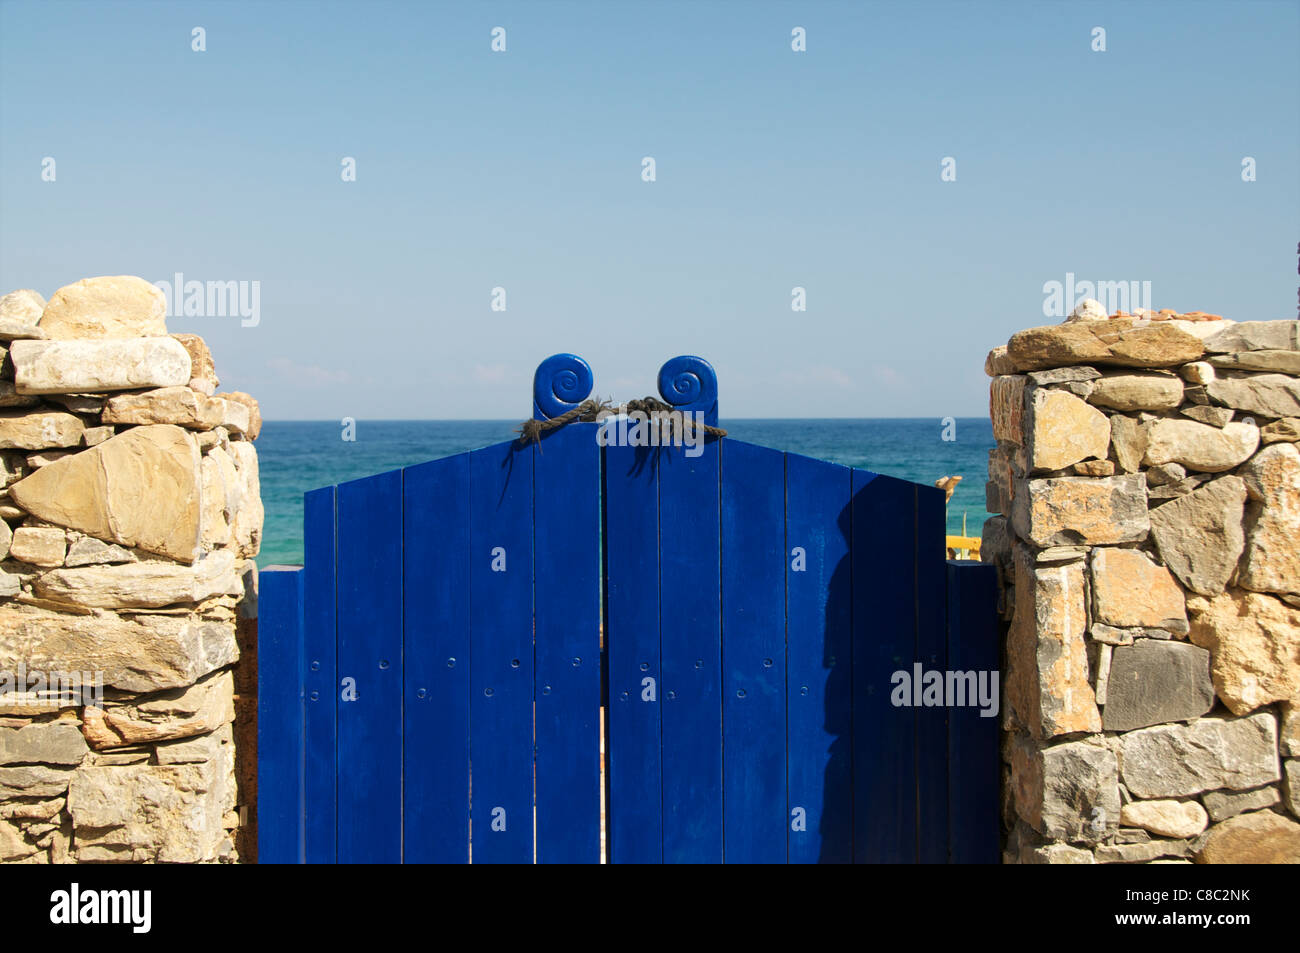 Paradies geschlossen Konzept, blaue Tore zur Ägäis gebunden sind Stockfoto